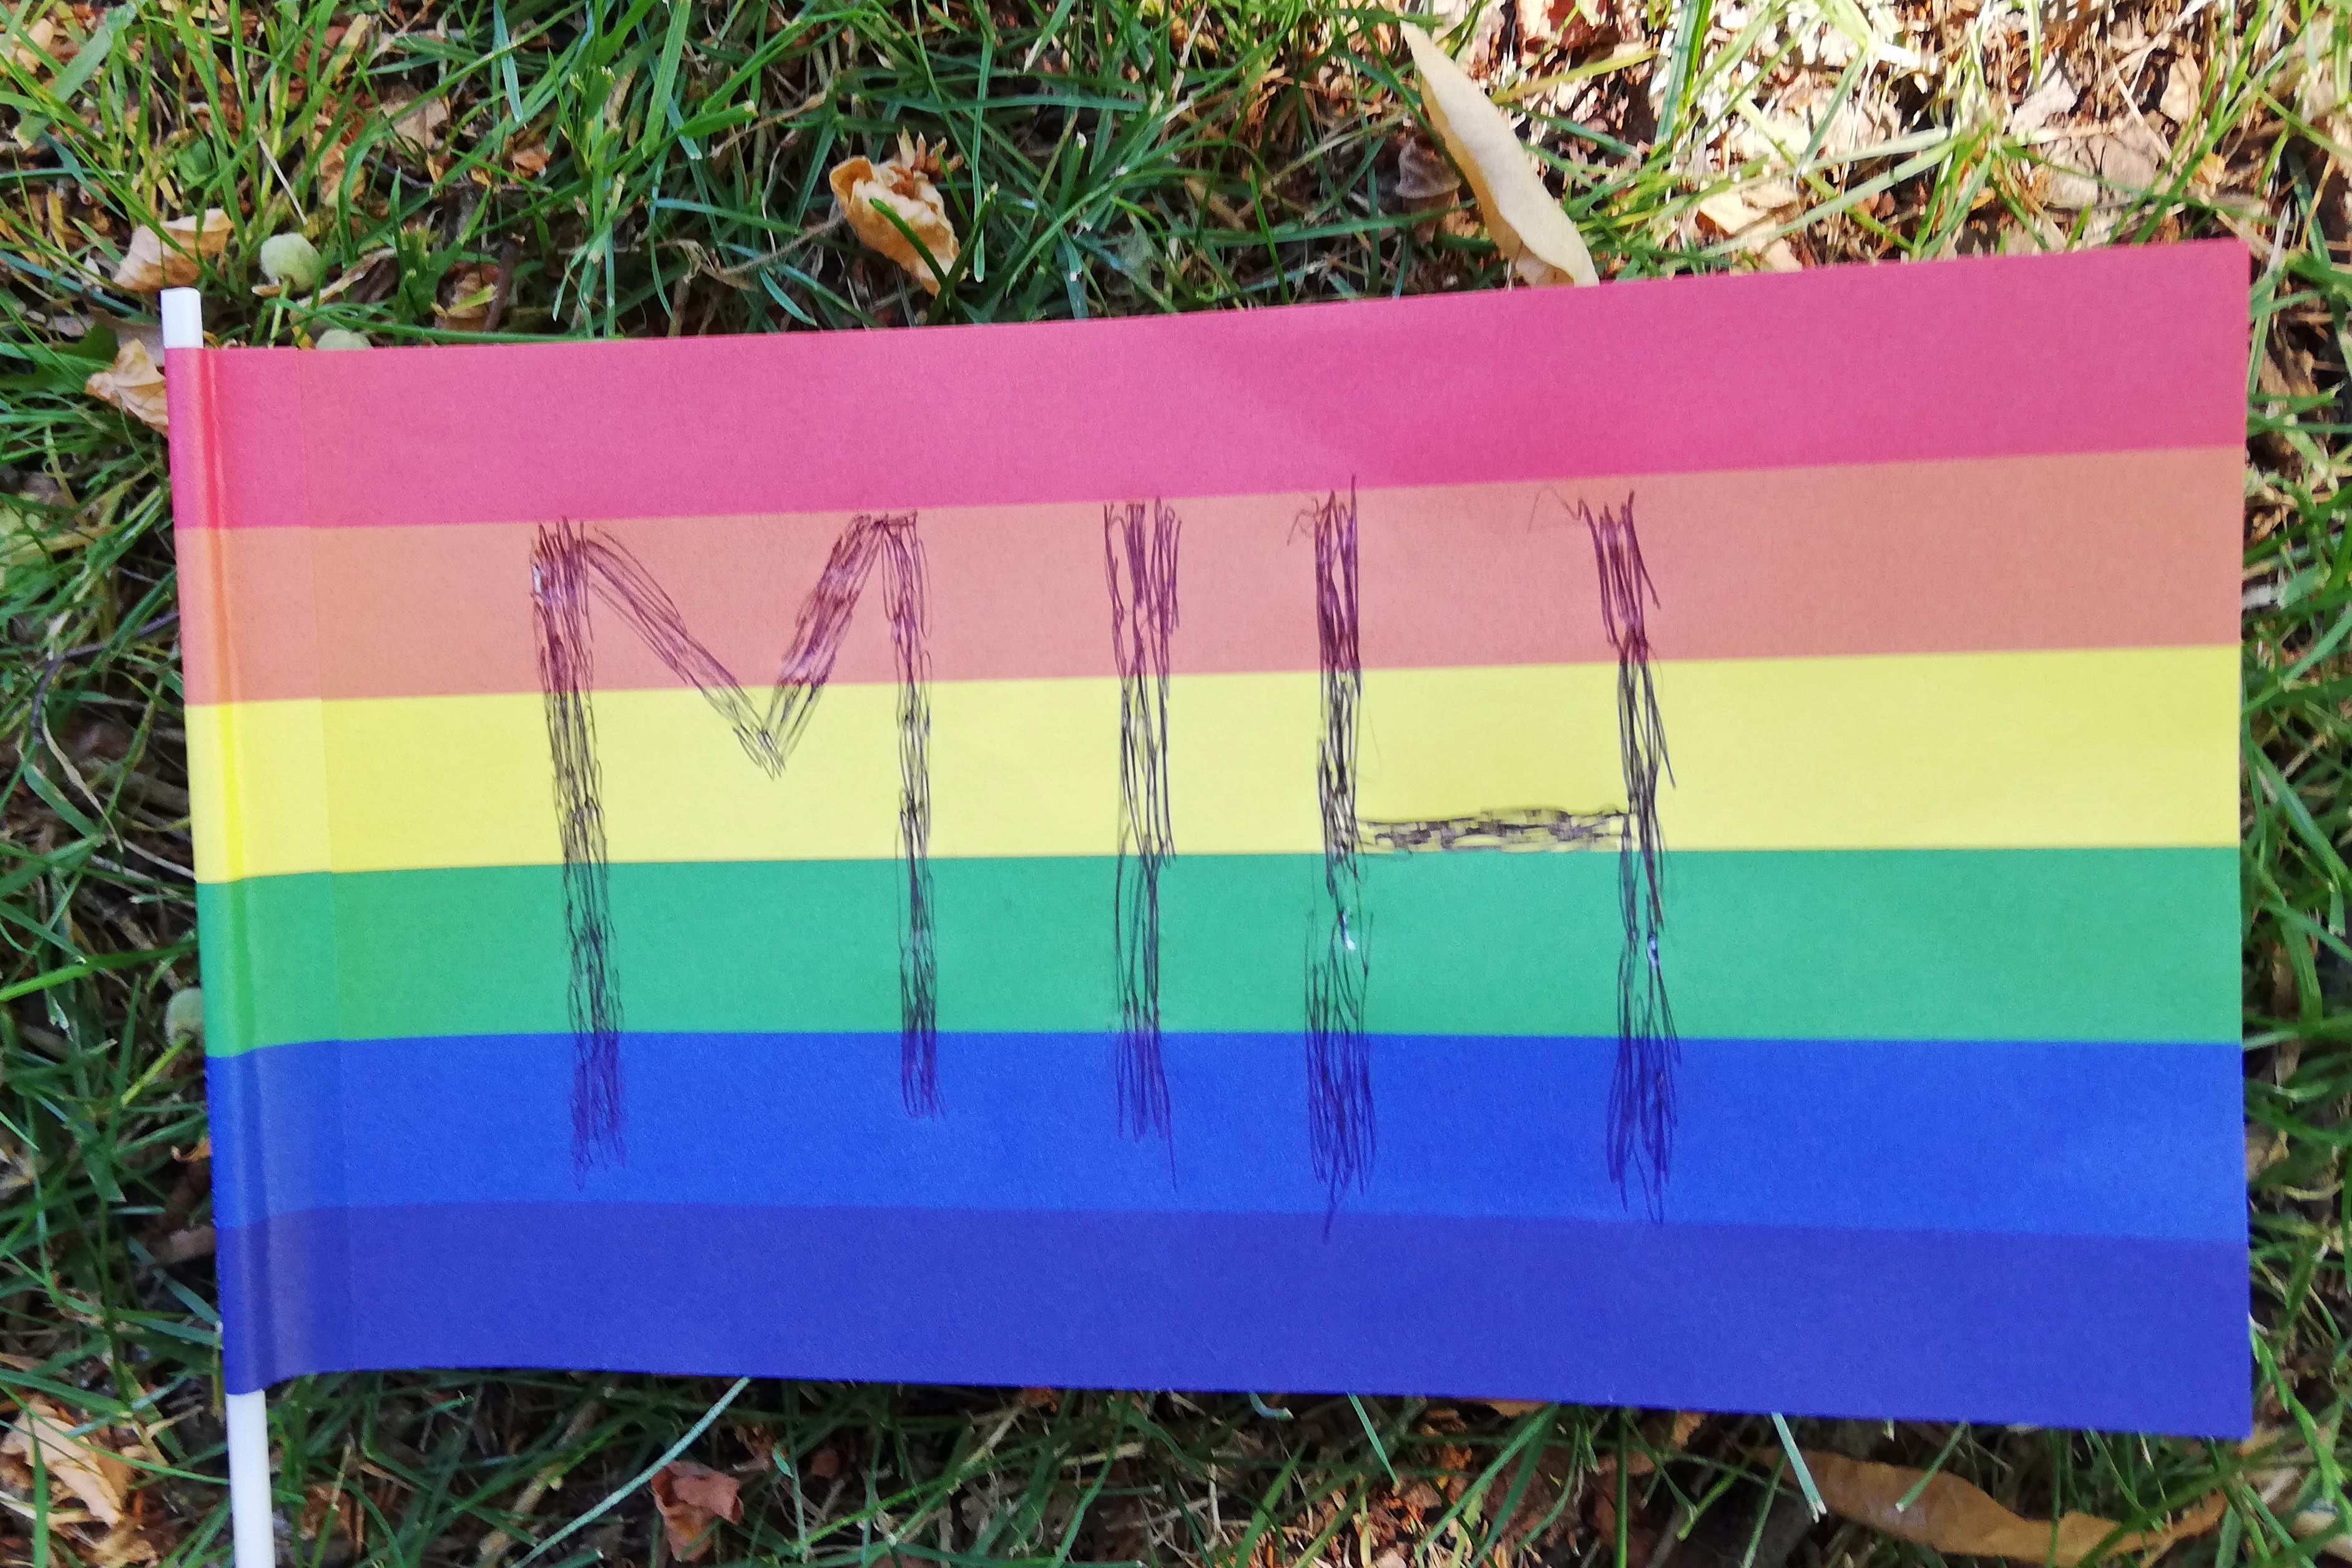 Auf einer großen Regenbogen-Flaage sind die Buchstaben M I H zu erkennen. Diese stehen für den Verein von Menschen in Hanau.